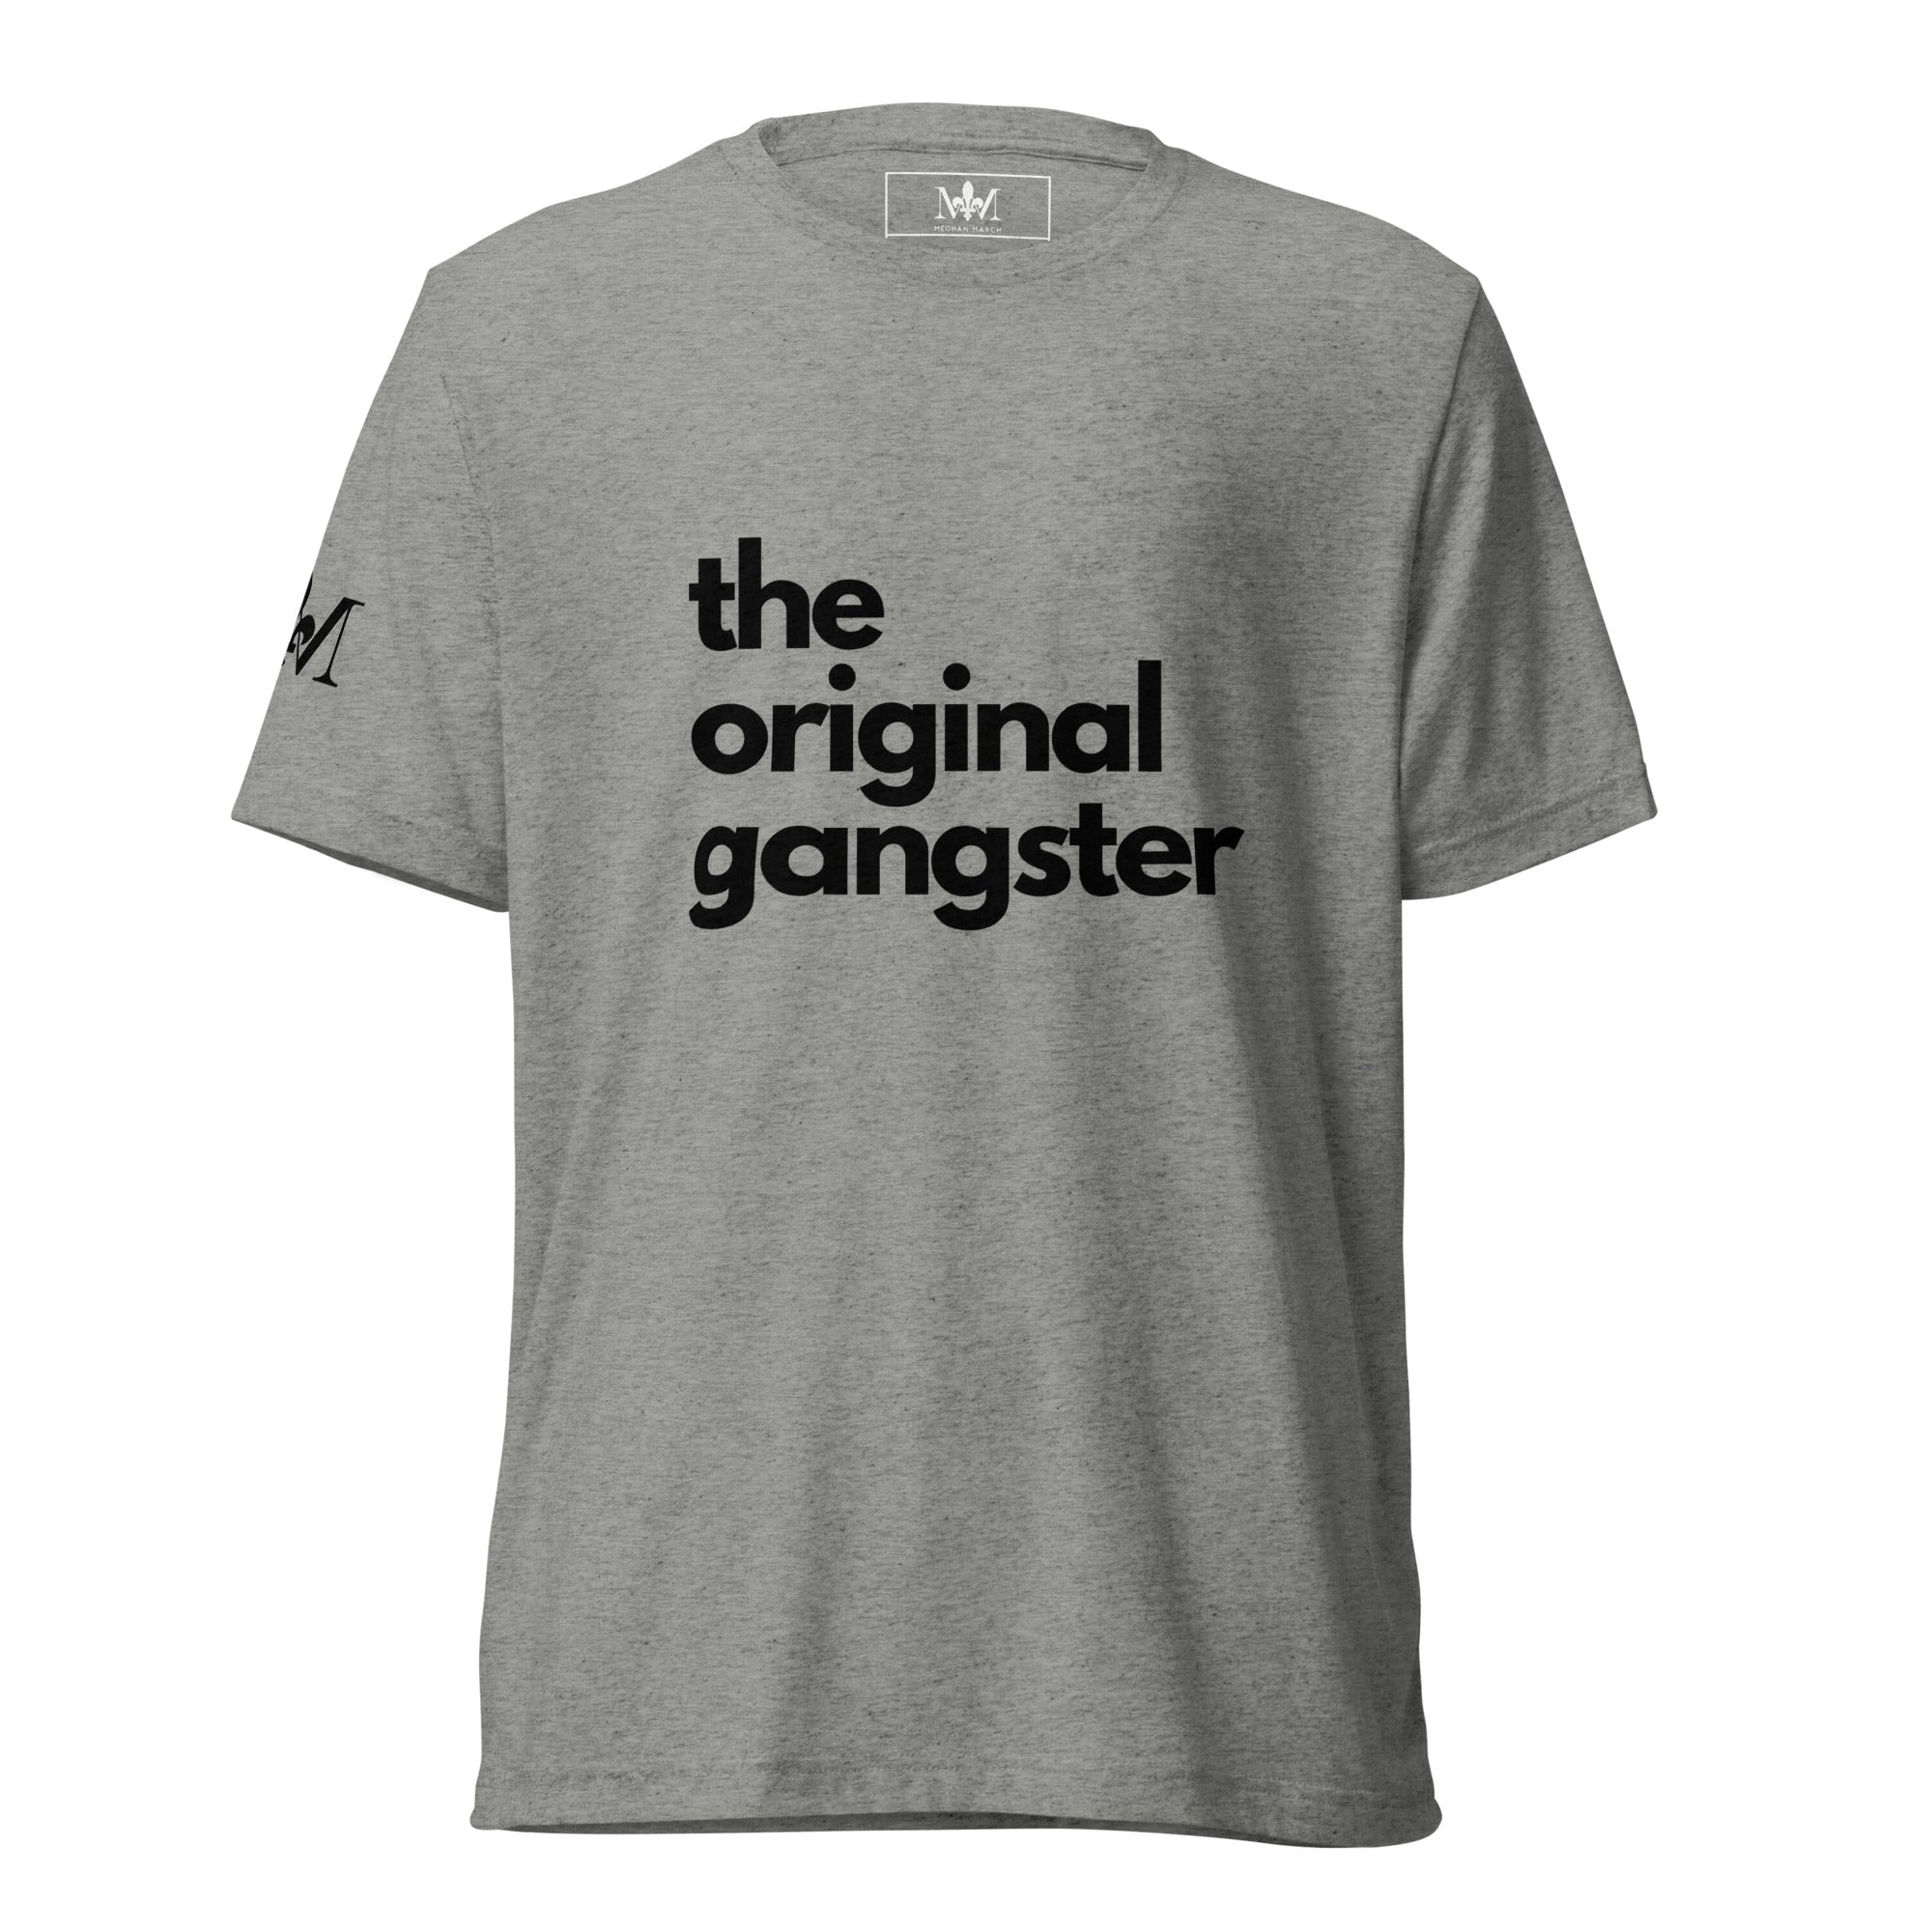 The OG T-Shirt